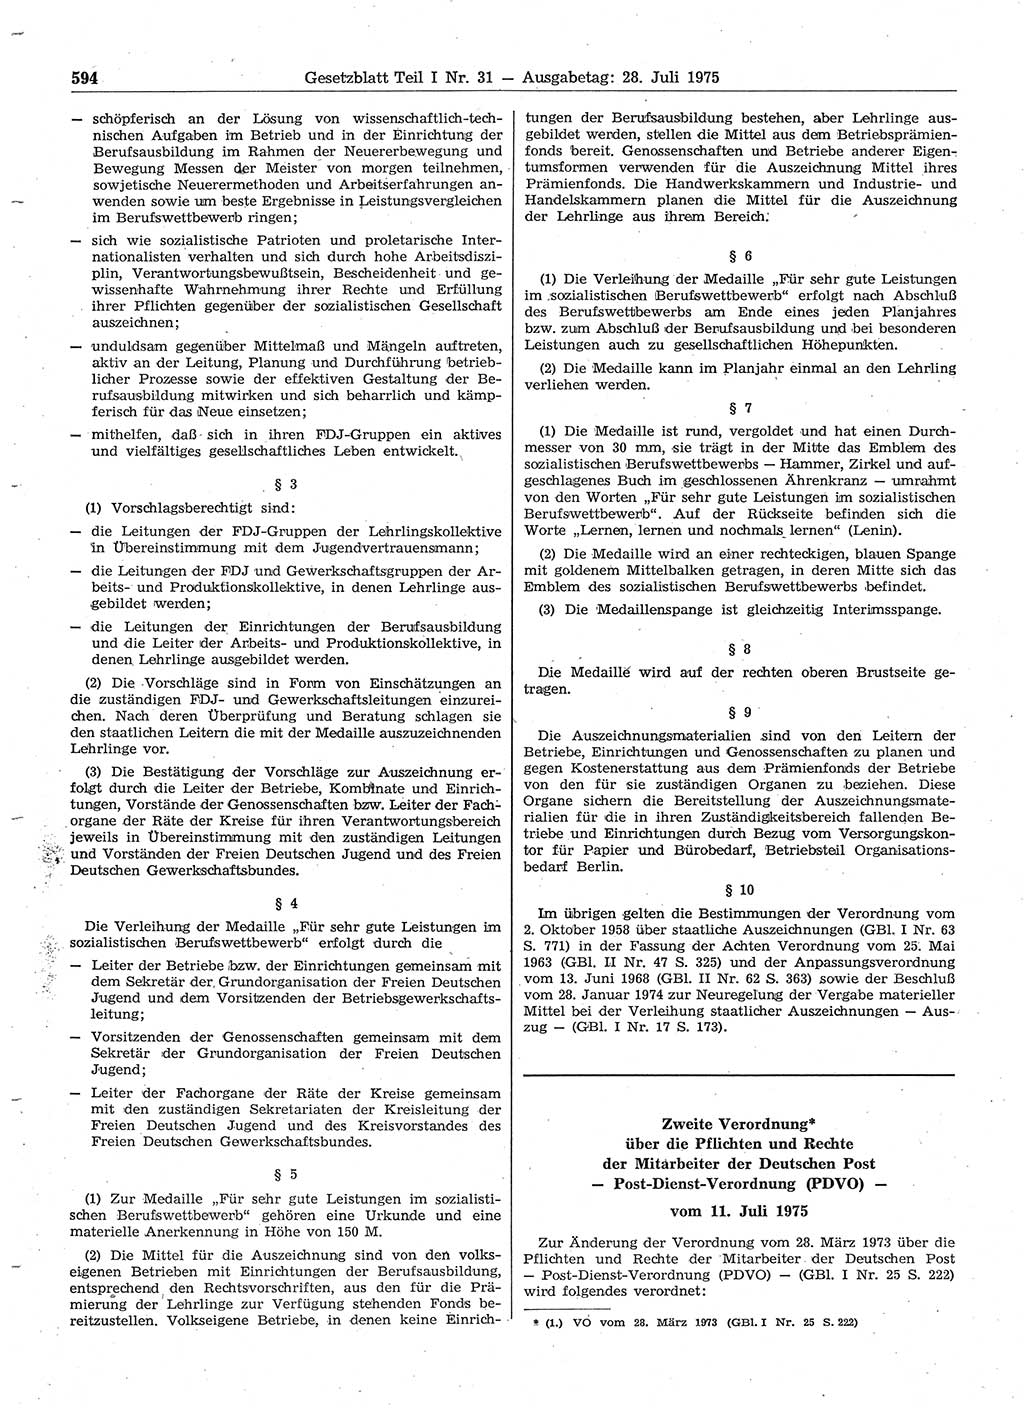 Gesetzblatt (GBl.) der Deutschen Demokratischen Republik (DDR) Teil Ⅰ 1975, Seite 594 (GBl. DDR Ⅰ 1975, S. 594)